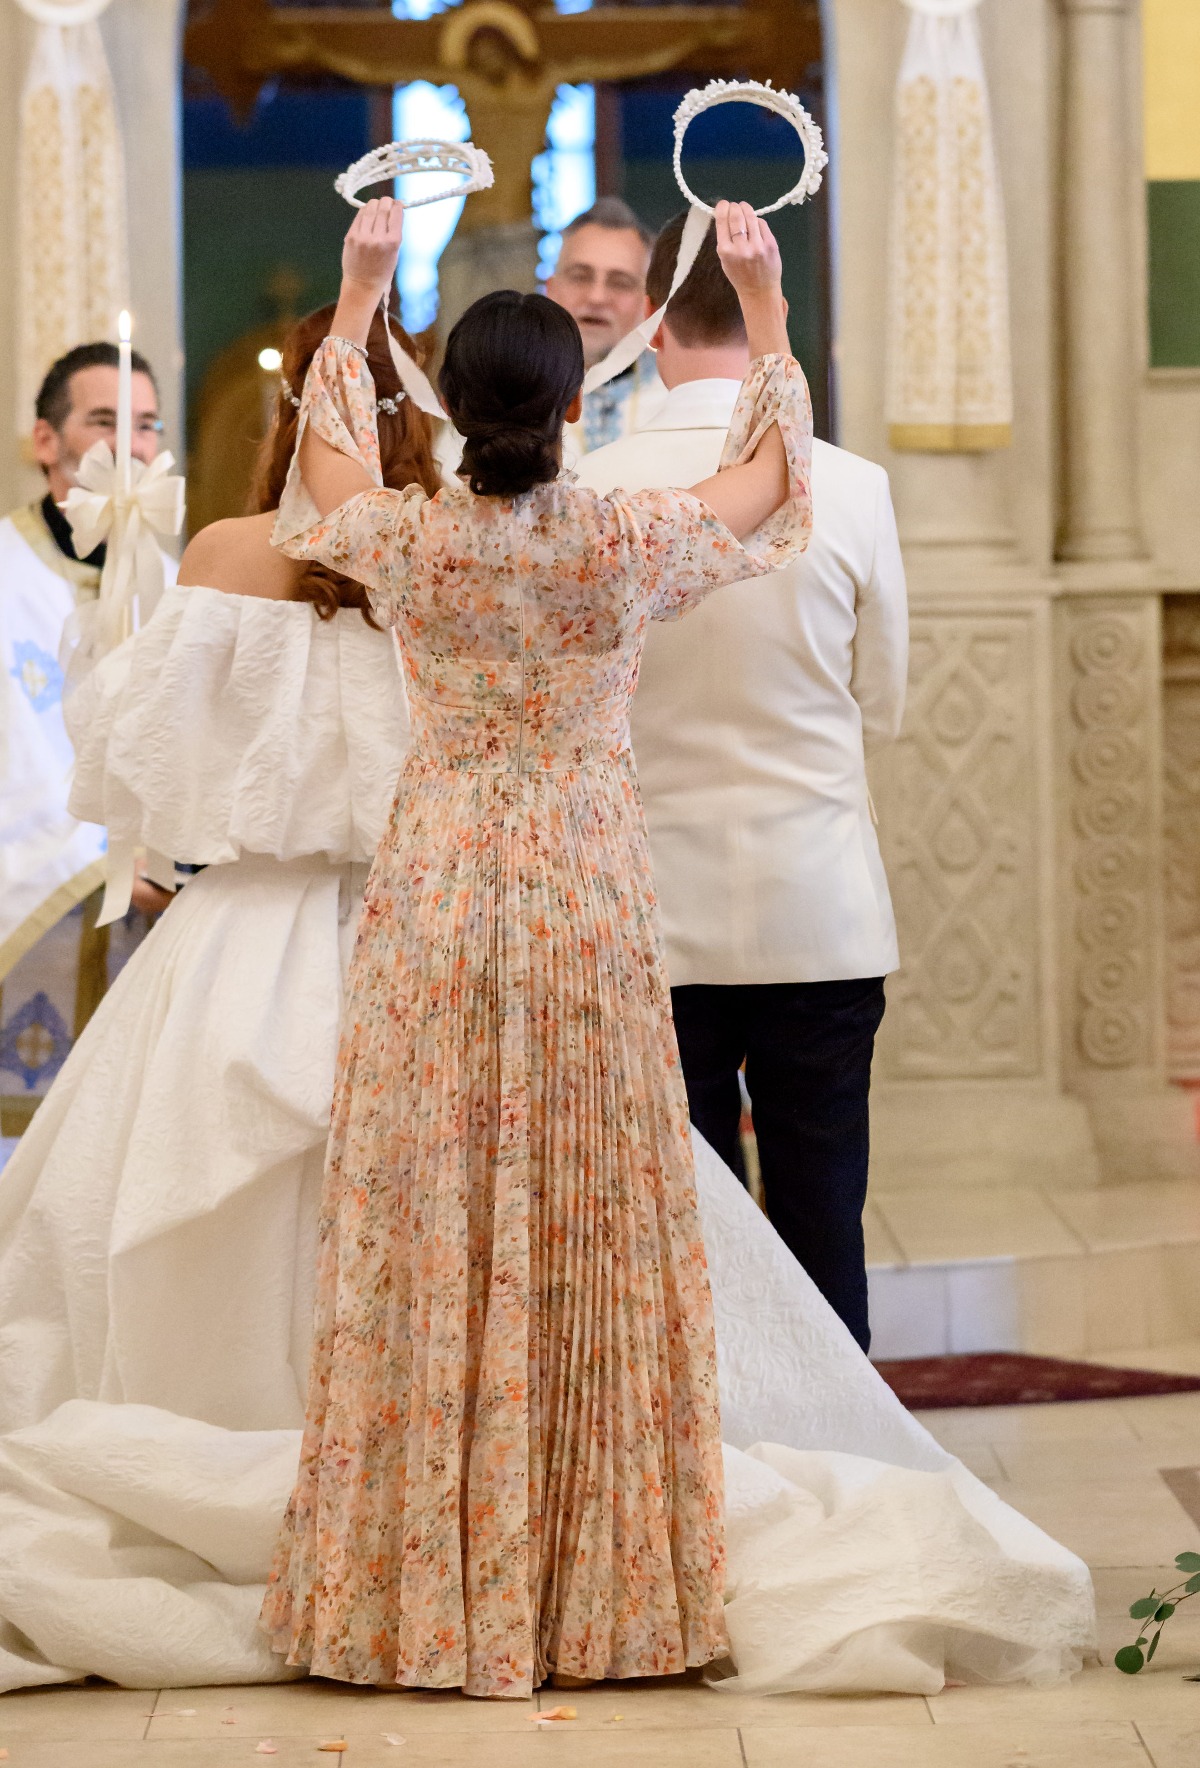 Greek wedding ceremony